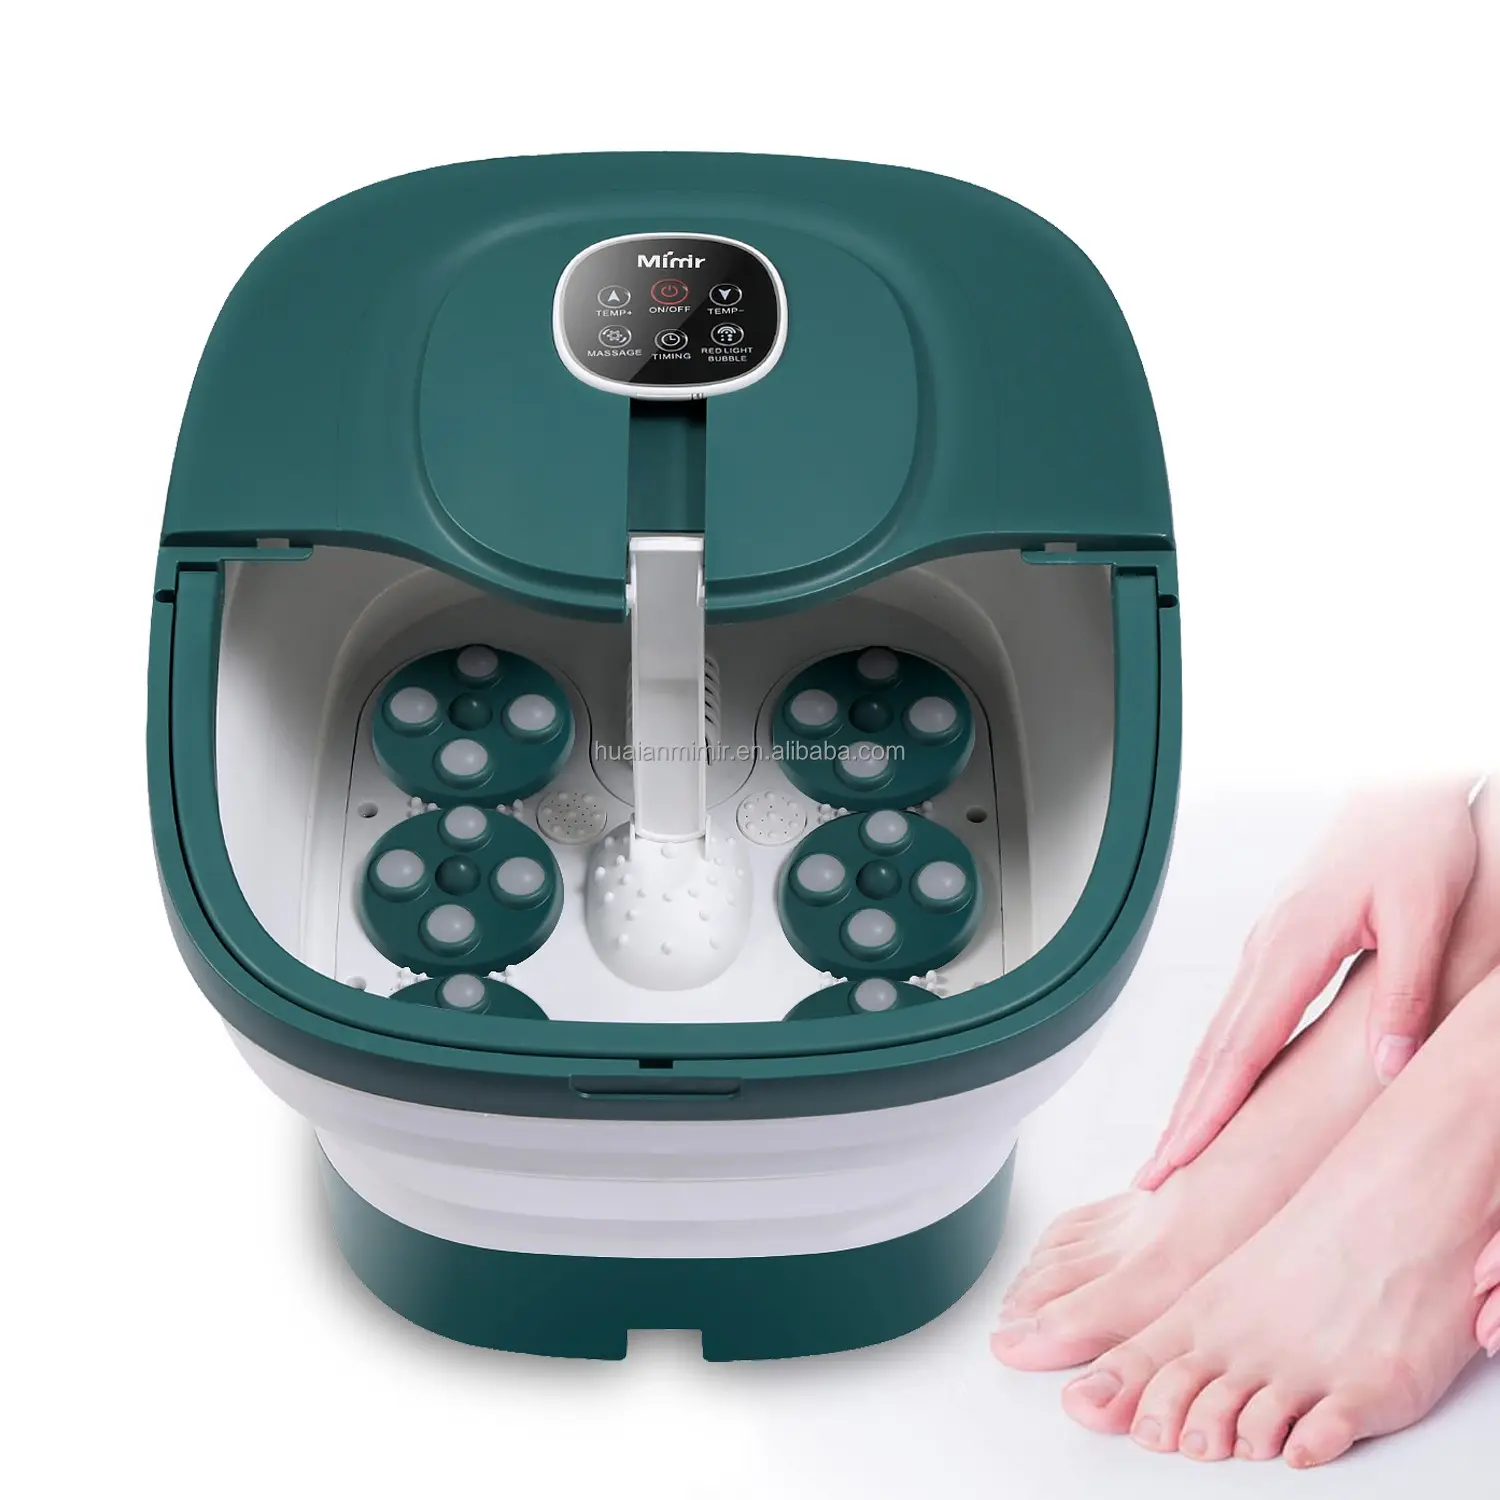 Mimir fabrika OEM Shiatsu otomatik masaj ayak Spa banyo masaj aleti makinesi yorgun ayaklar için uzaktan 24 otomatik masaj topları ile